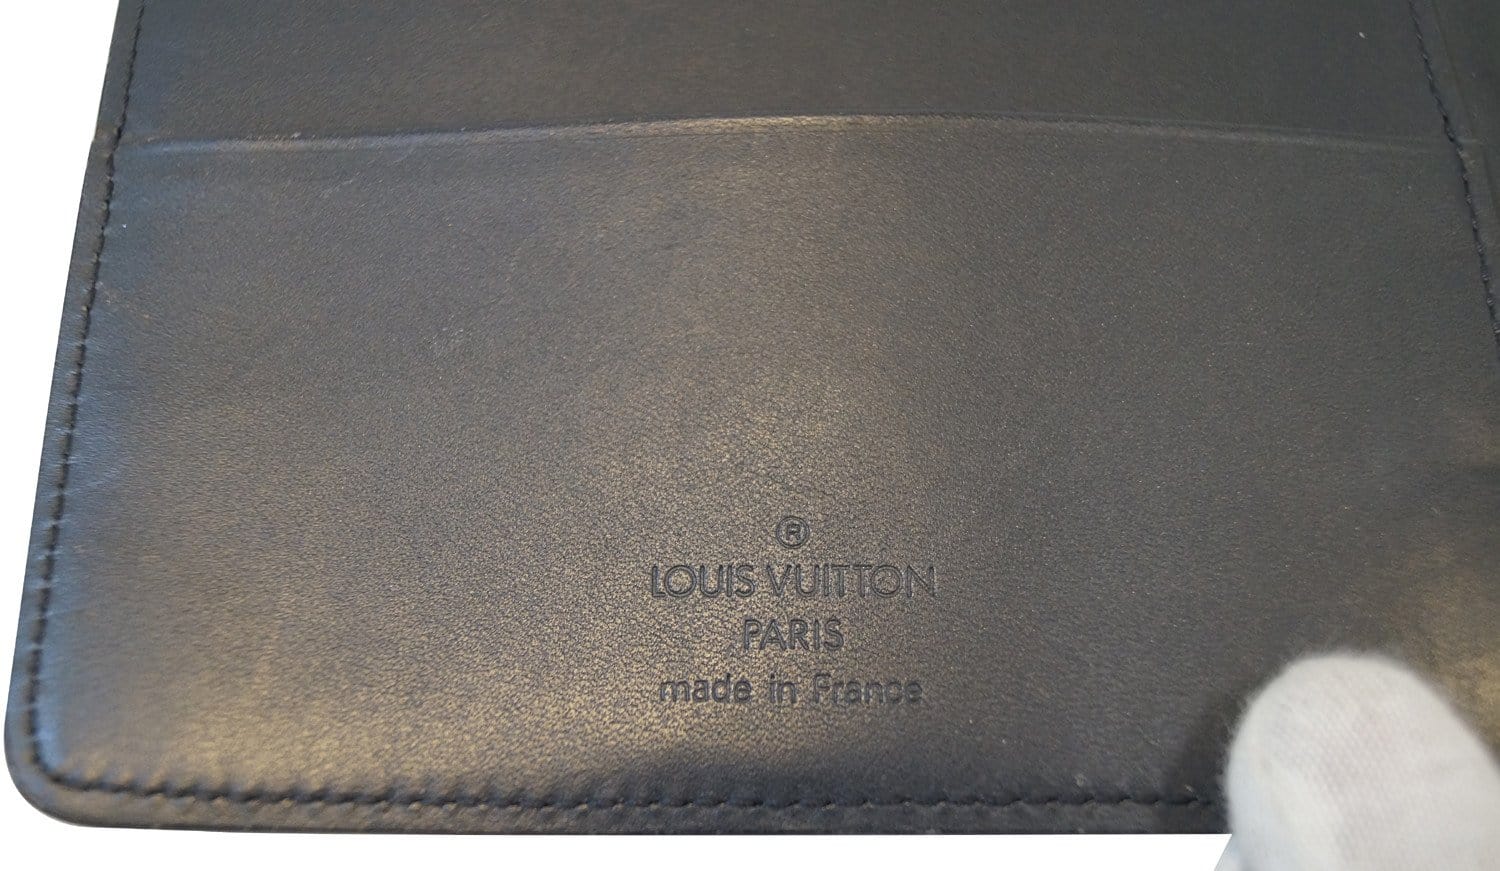 Louis Vuitton, Bags, Louis Vuitton Black Matte Agenda Ring Binder